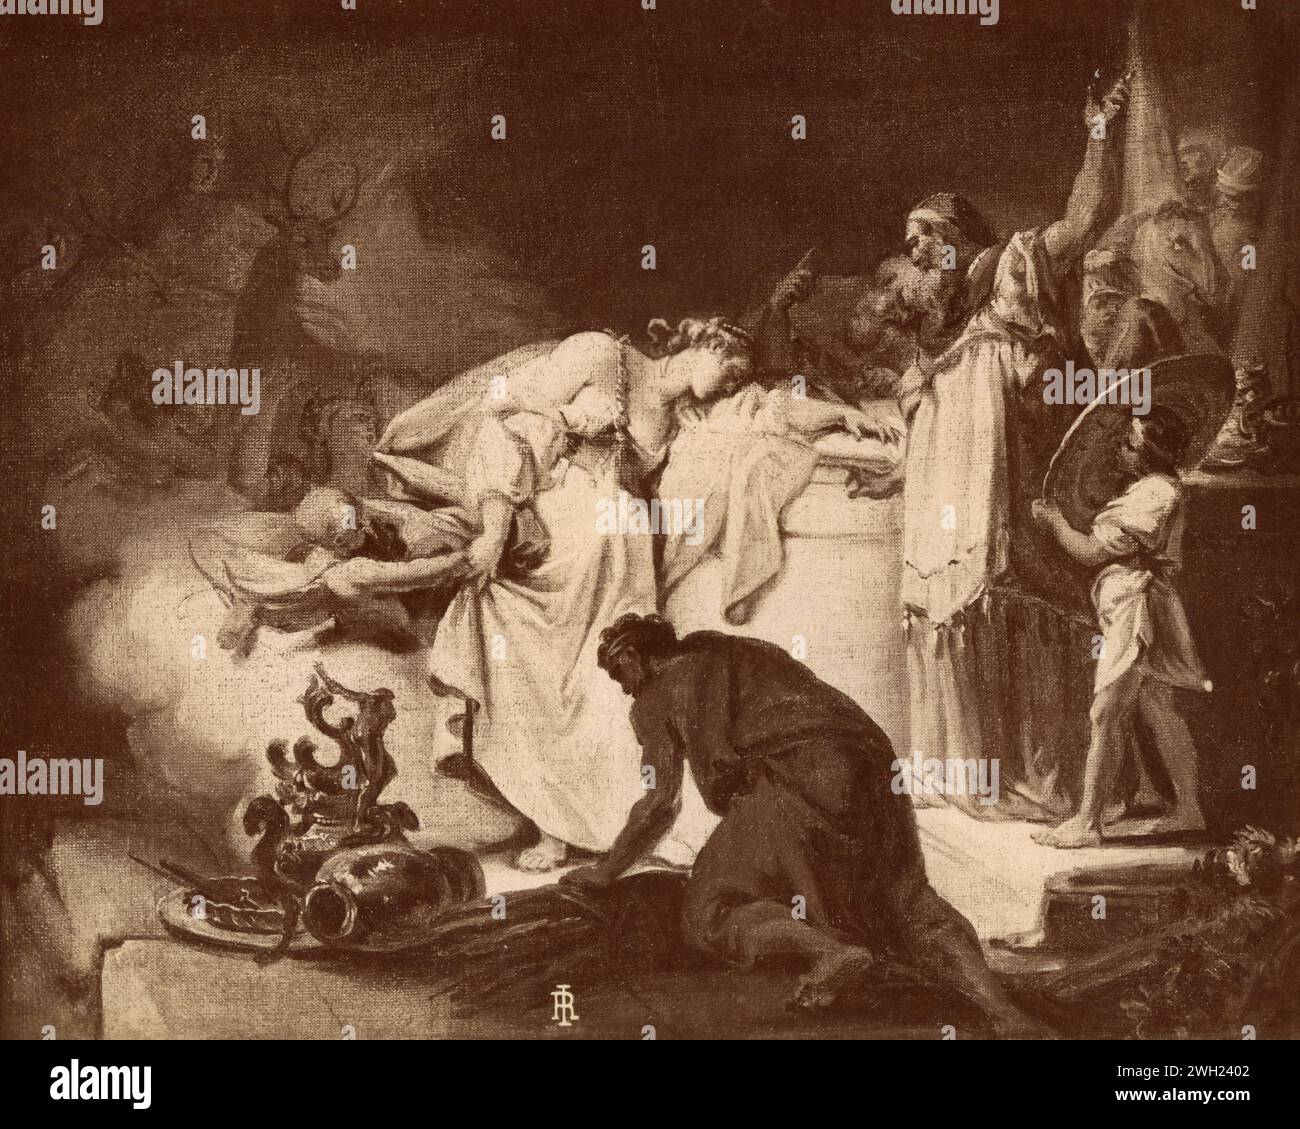 Le sacrifice d'Iphigénie, peinture de l'artiste italien Giovanni Battista Tiepolo, années 1890 Banque D'Images